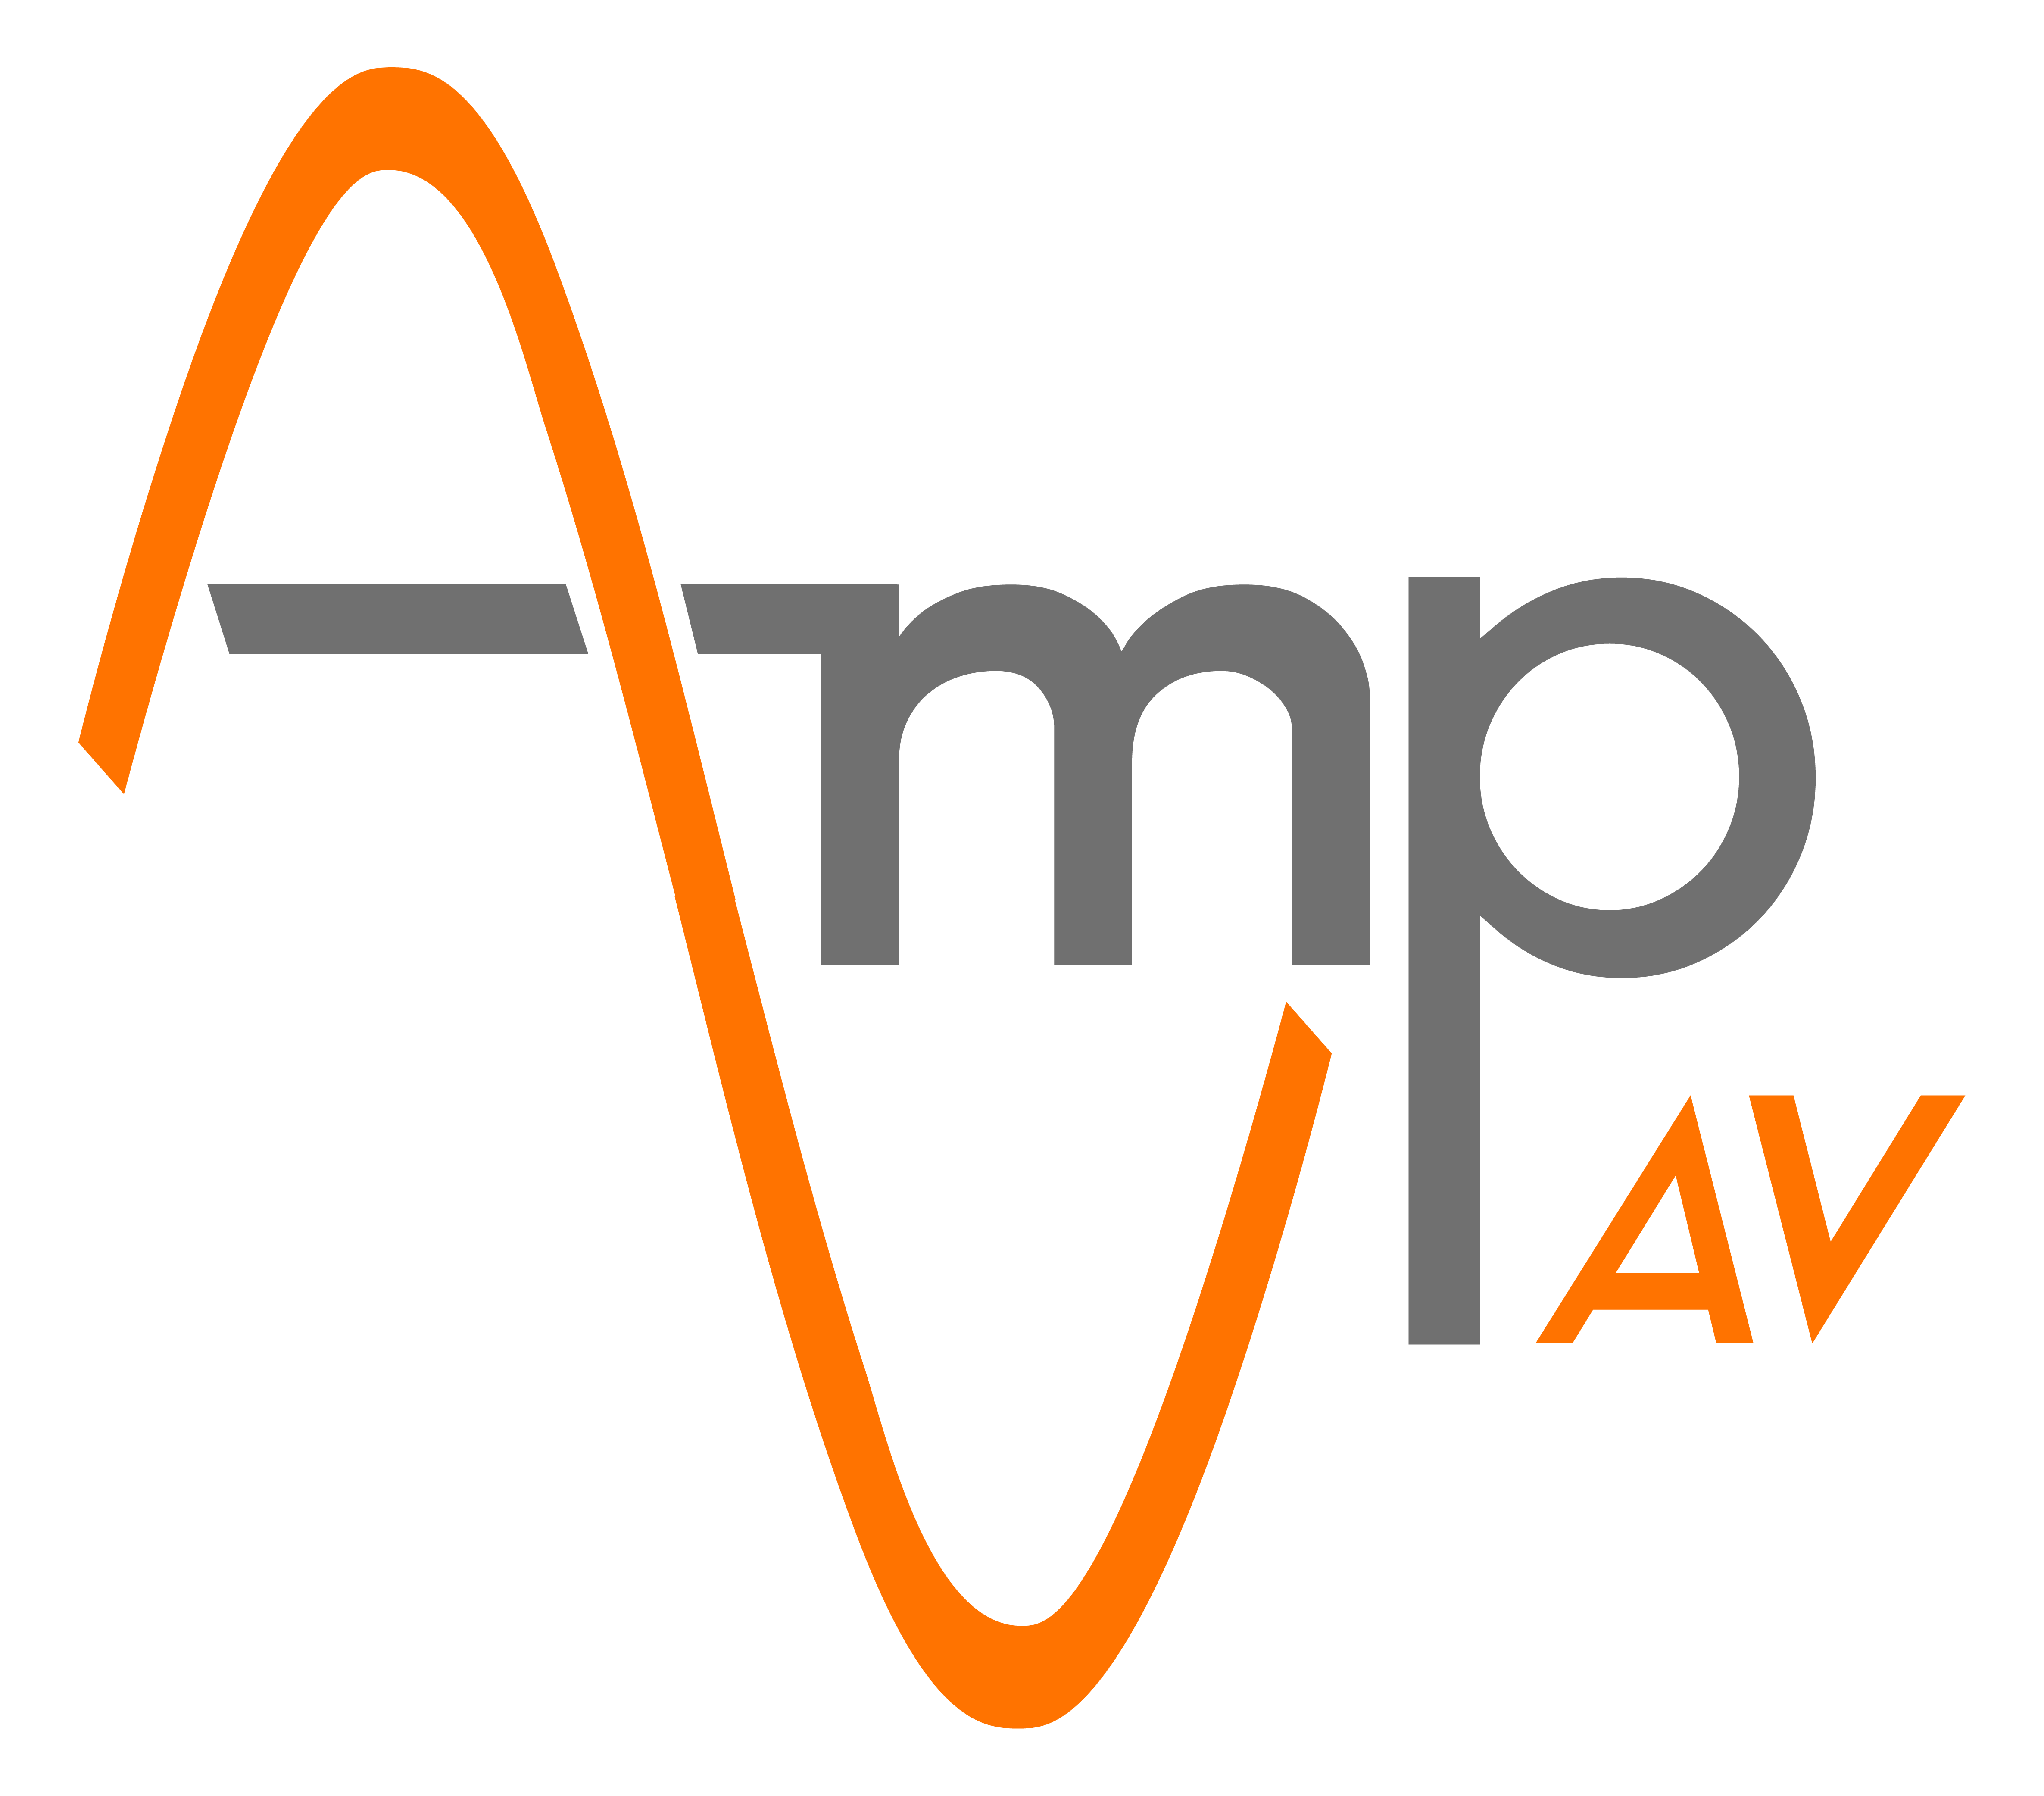 Amp AV Logo